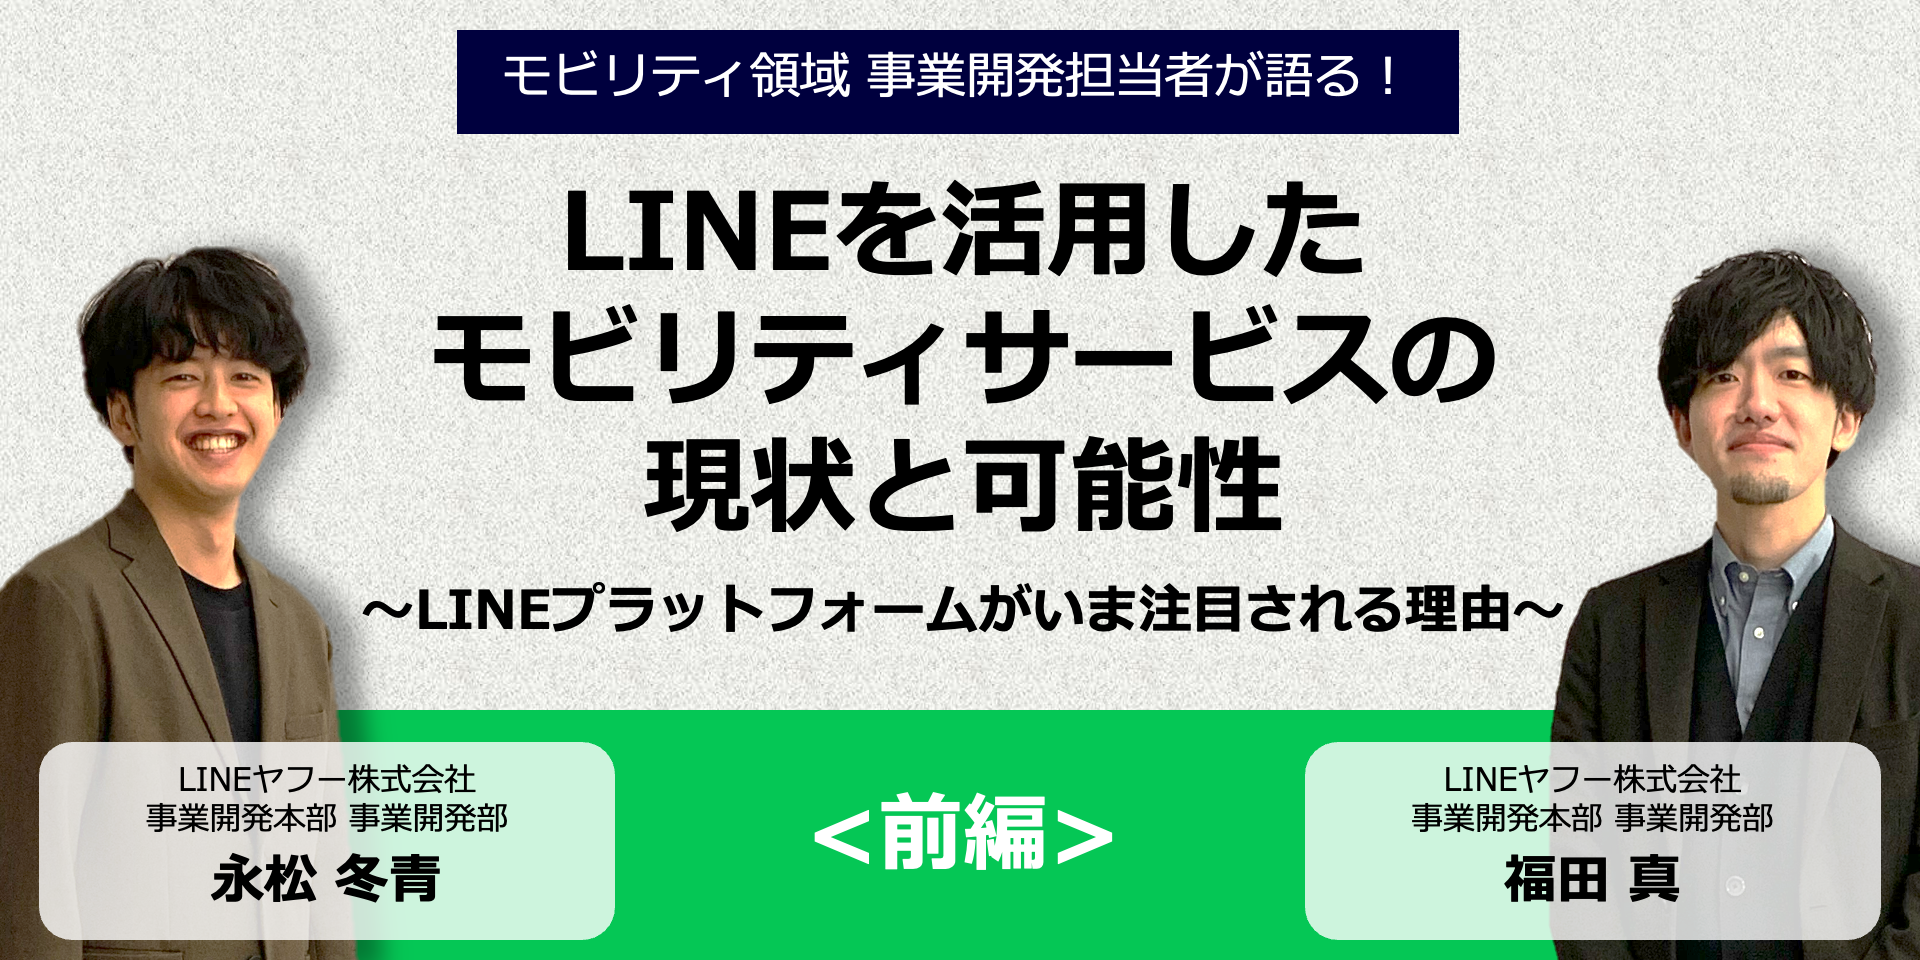 【社内対談/前編】LINEを活用したモビリティサービスの現状と可能性〜LINEプラットフォームがいま注目される理由〜